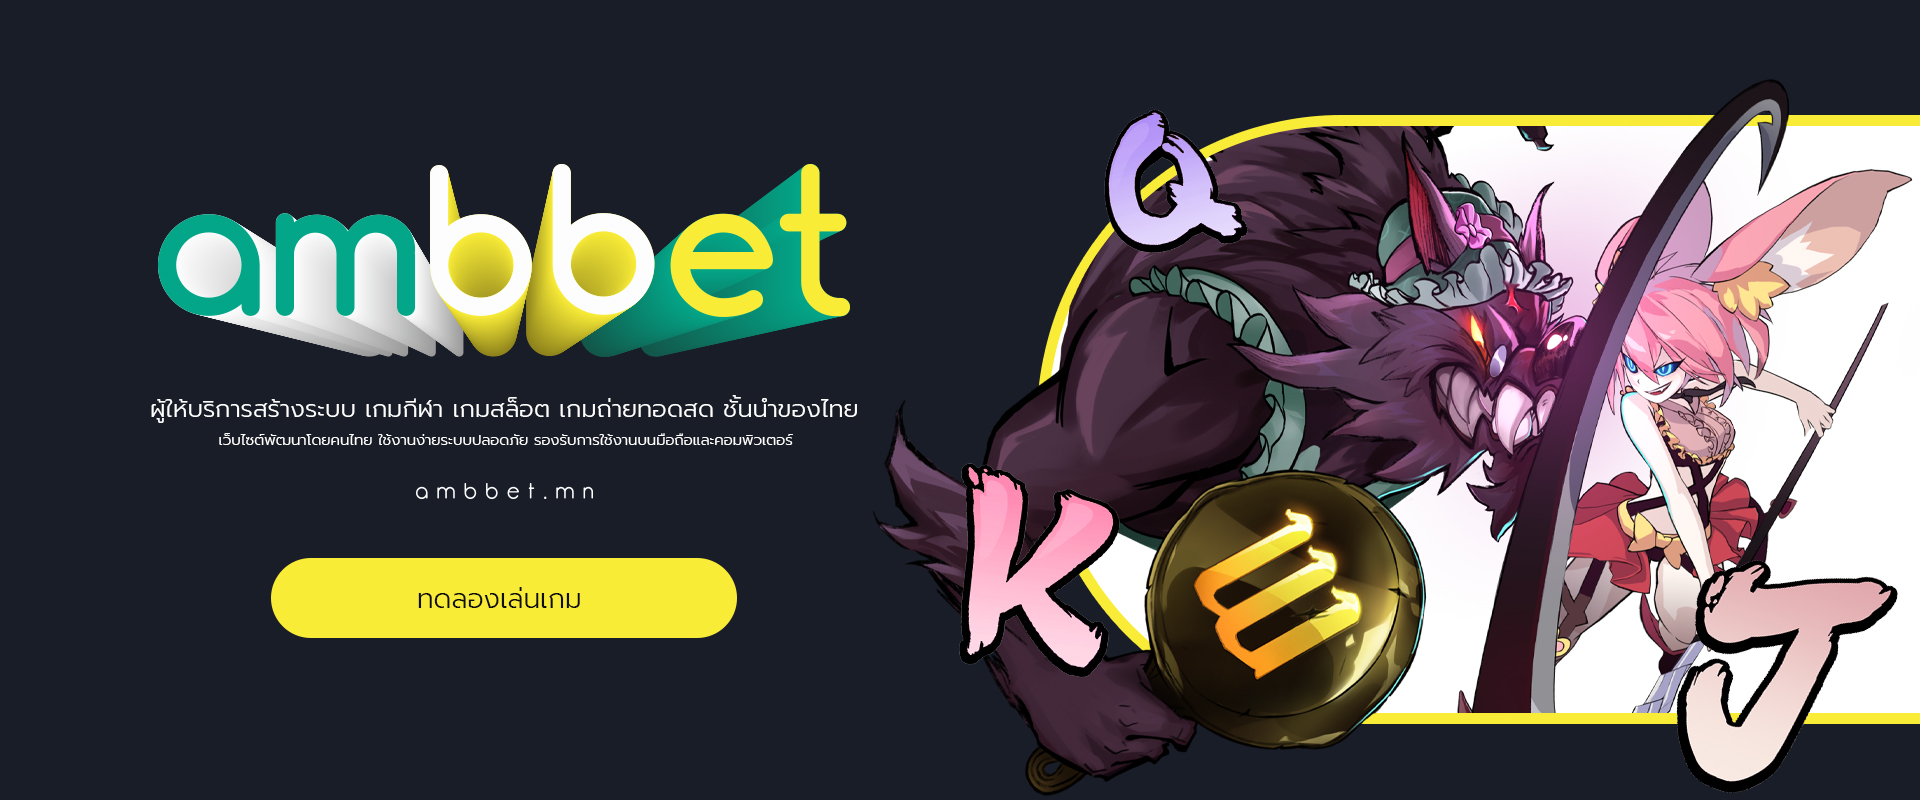 ambbet ผู้ให้บริการเกมสล็อต พัฒนาโดยคนไทย